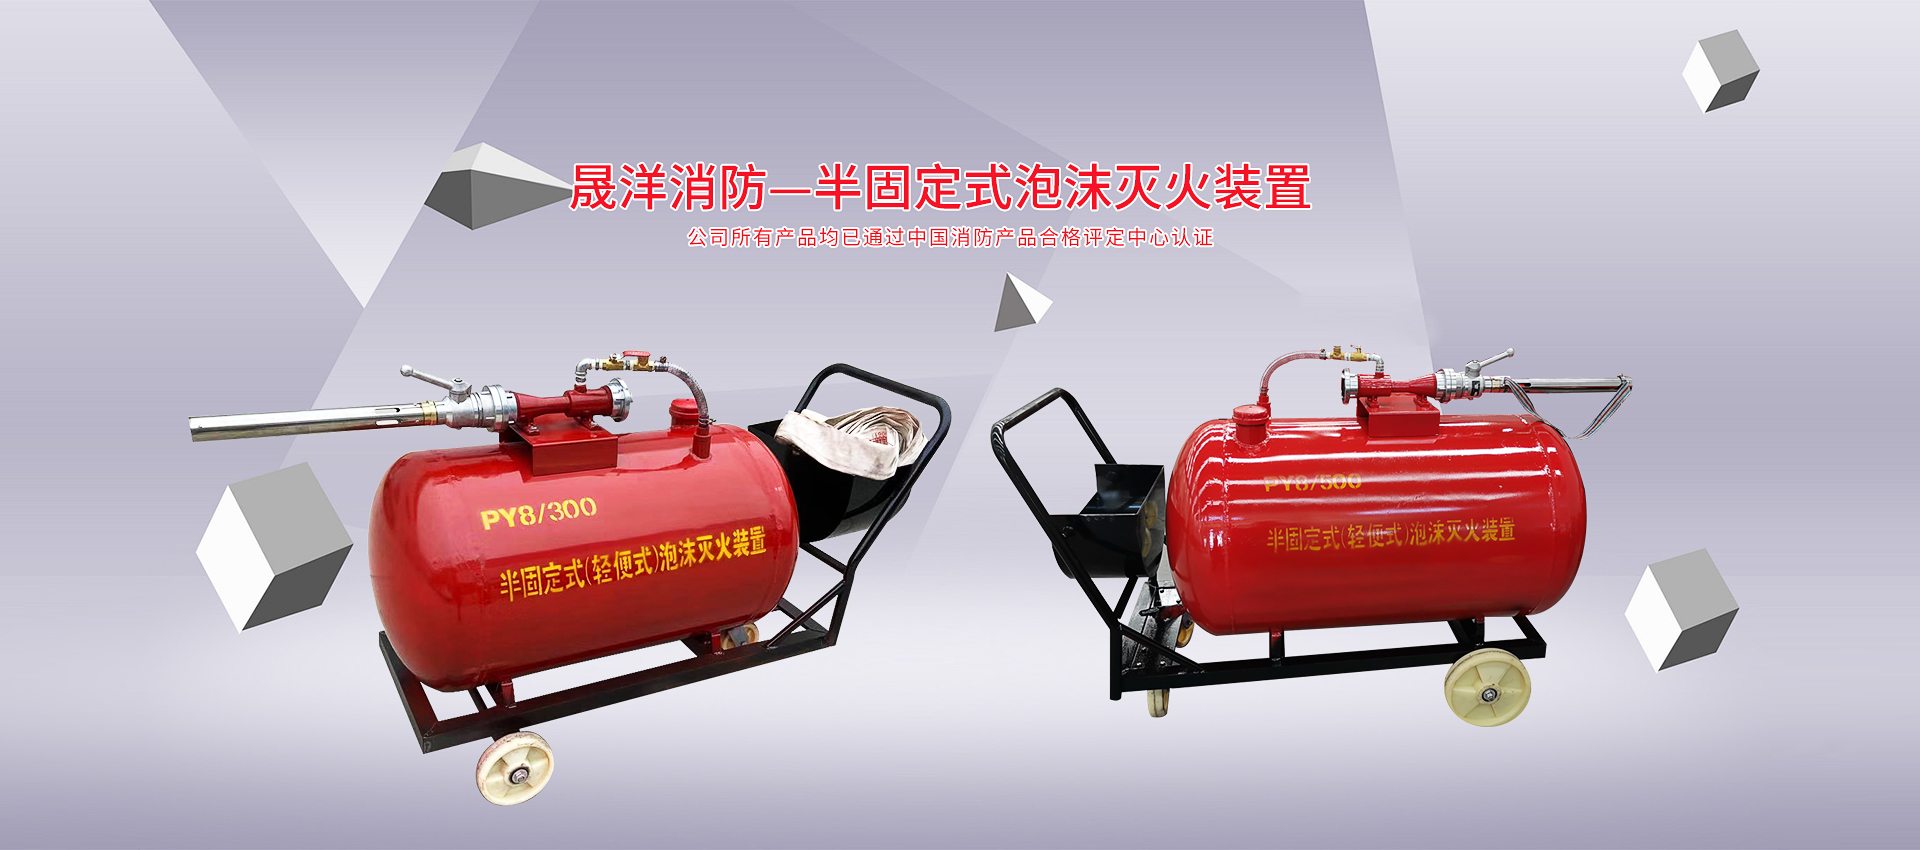 晟洋消防，半固定式泡沫灭火装置，公司所有产品均已通过中国消防产品合格评定中心认证